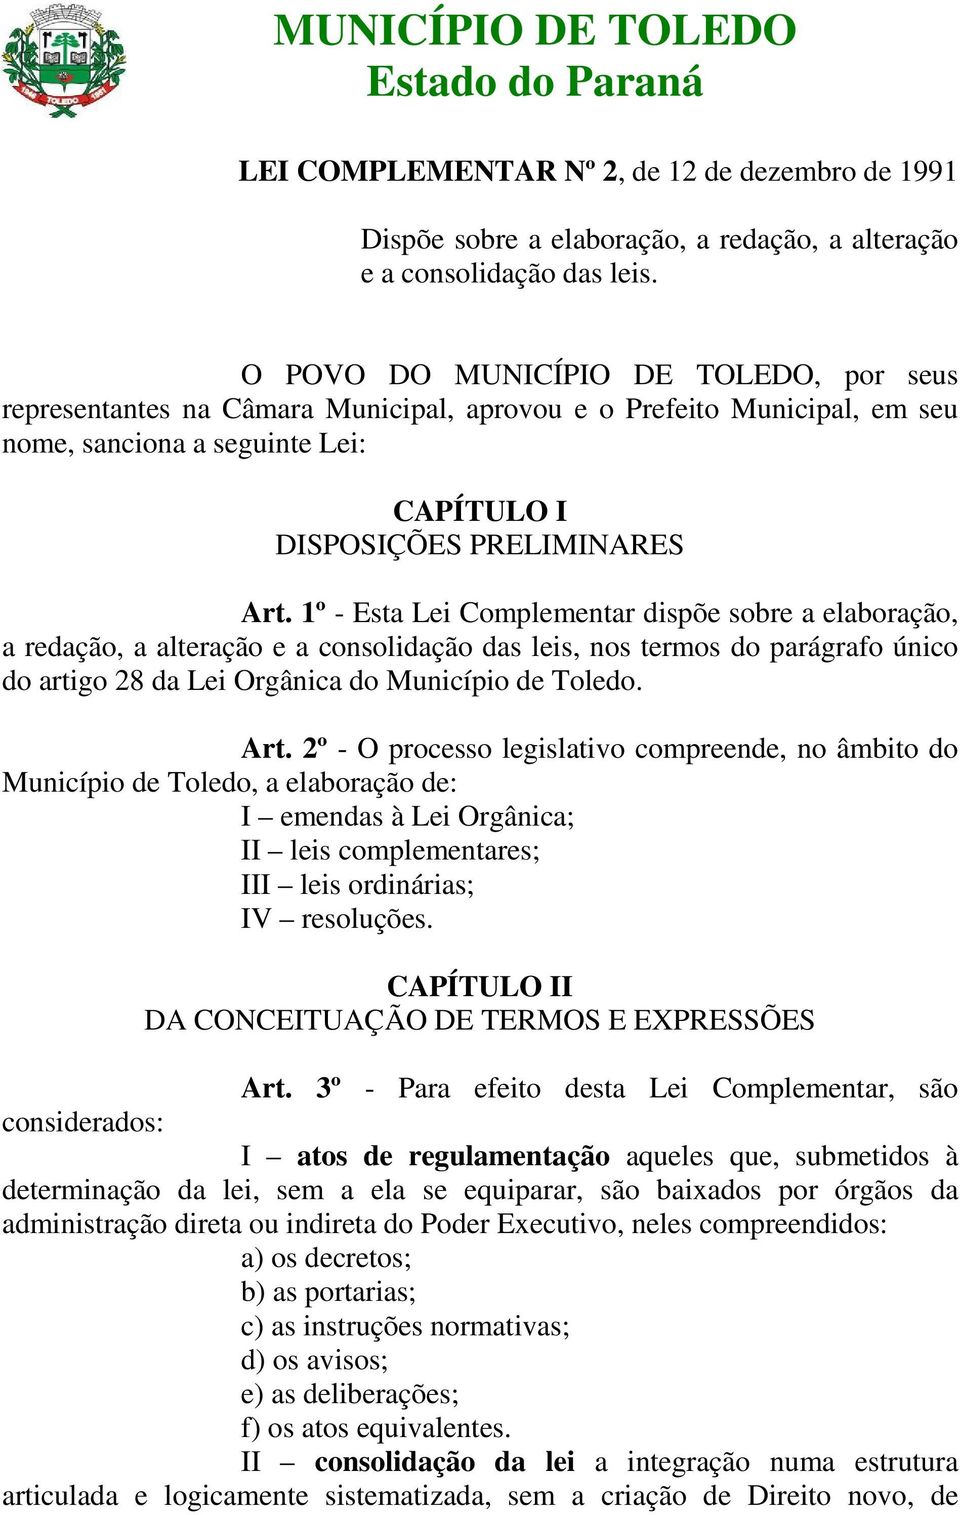 1º - Esta Lei Complementar dispõe sobre a elaboração, a redação, a alteração e a consolidação das leis, nos termos do parágrafo único do artigo 28 da Lei Orgânica do Município de Toledo. Art.